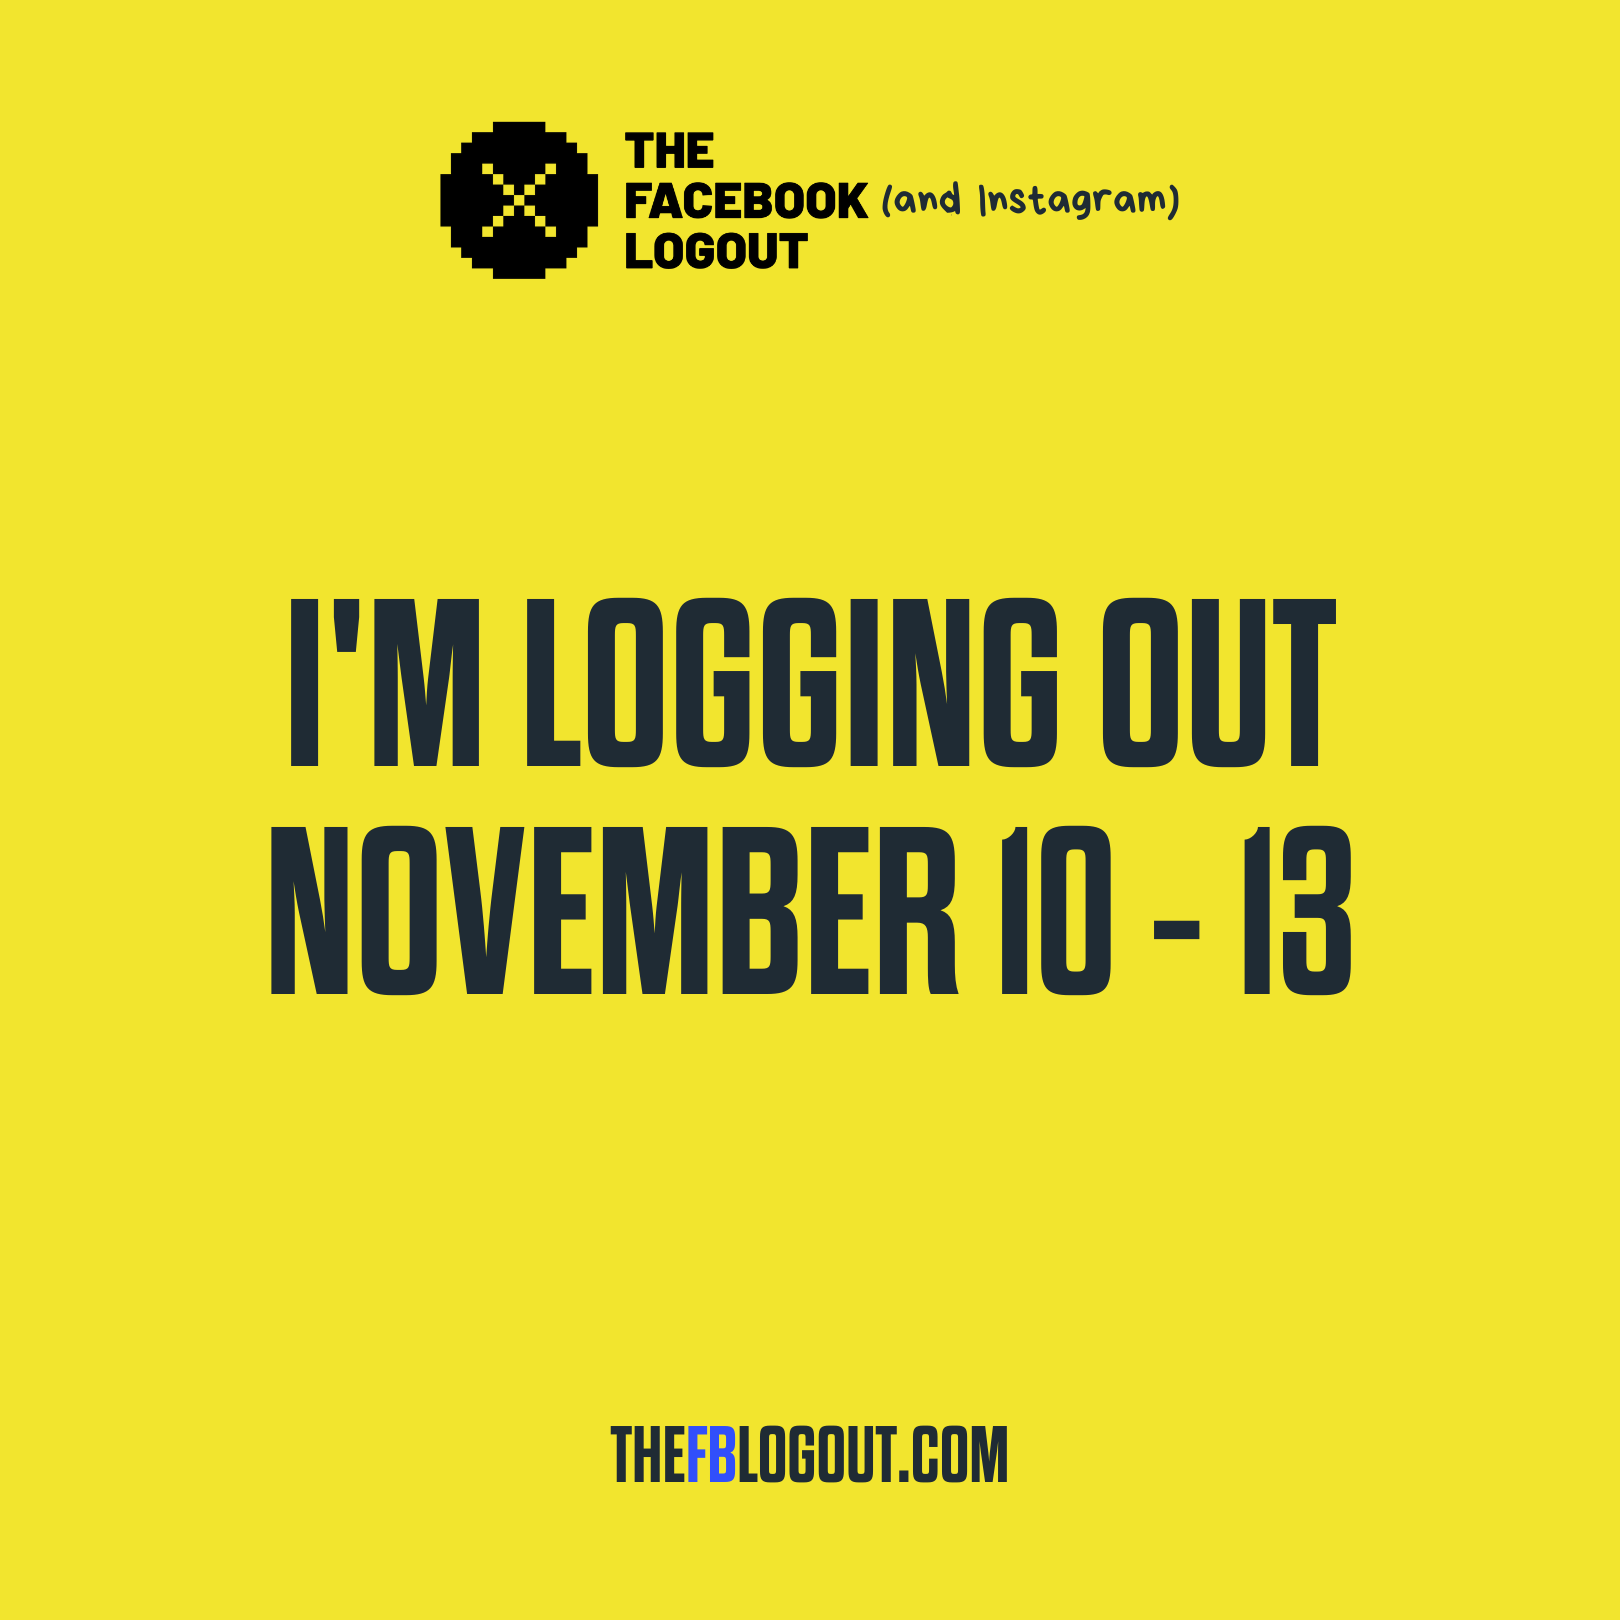 The Facebook Logout: Nov. 10-13